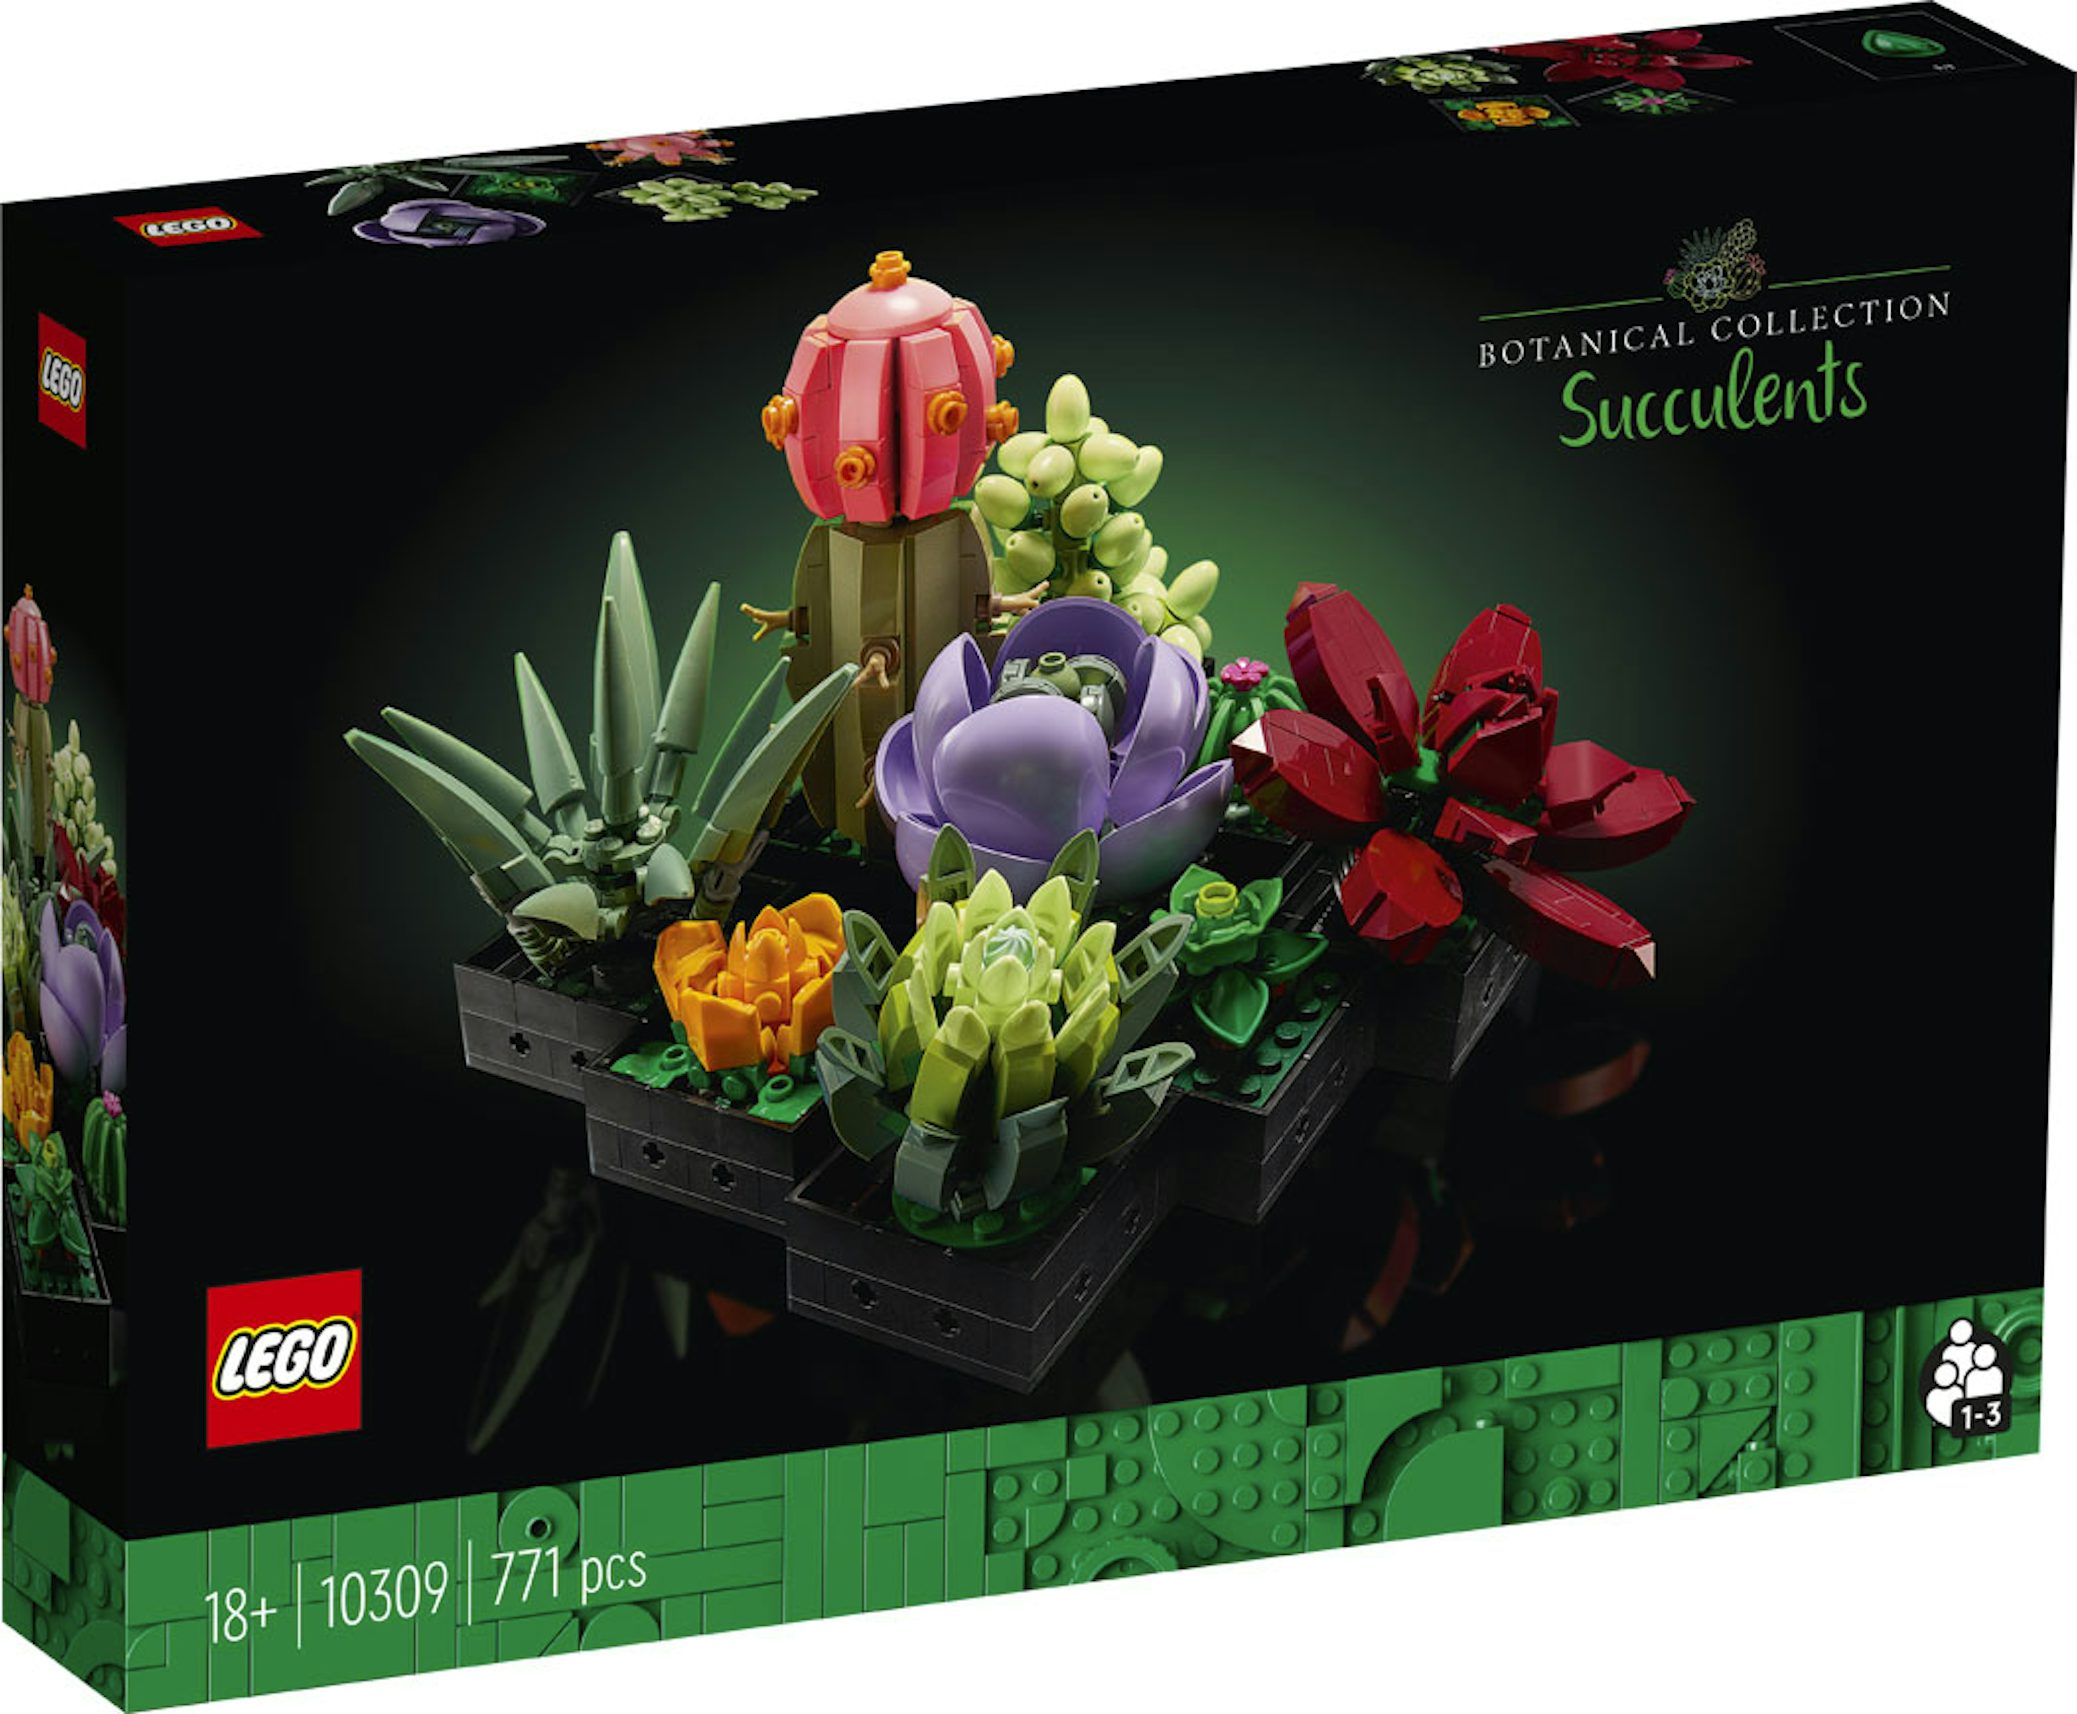 Nouveautés LEGO Botanical Collection 10309 Succulents et 10311